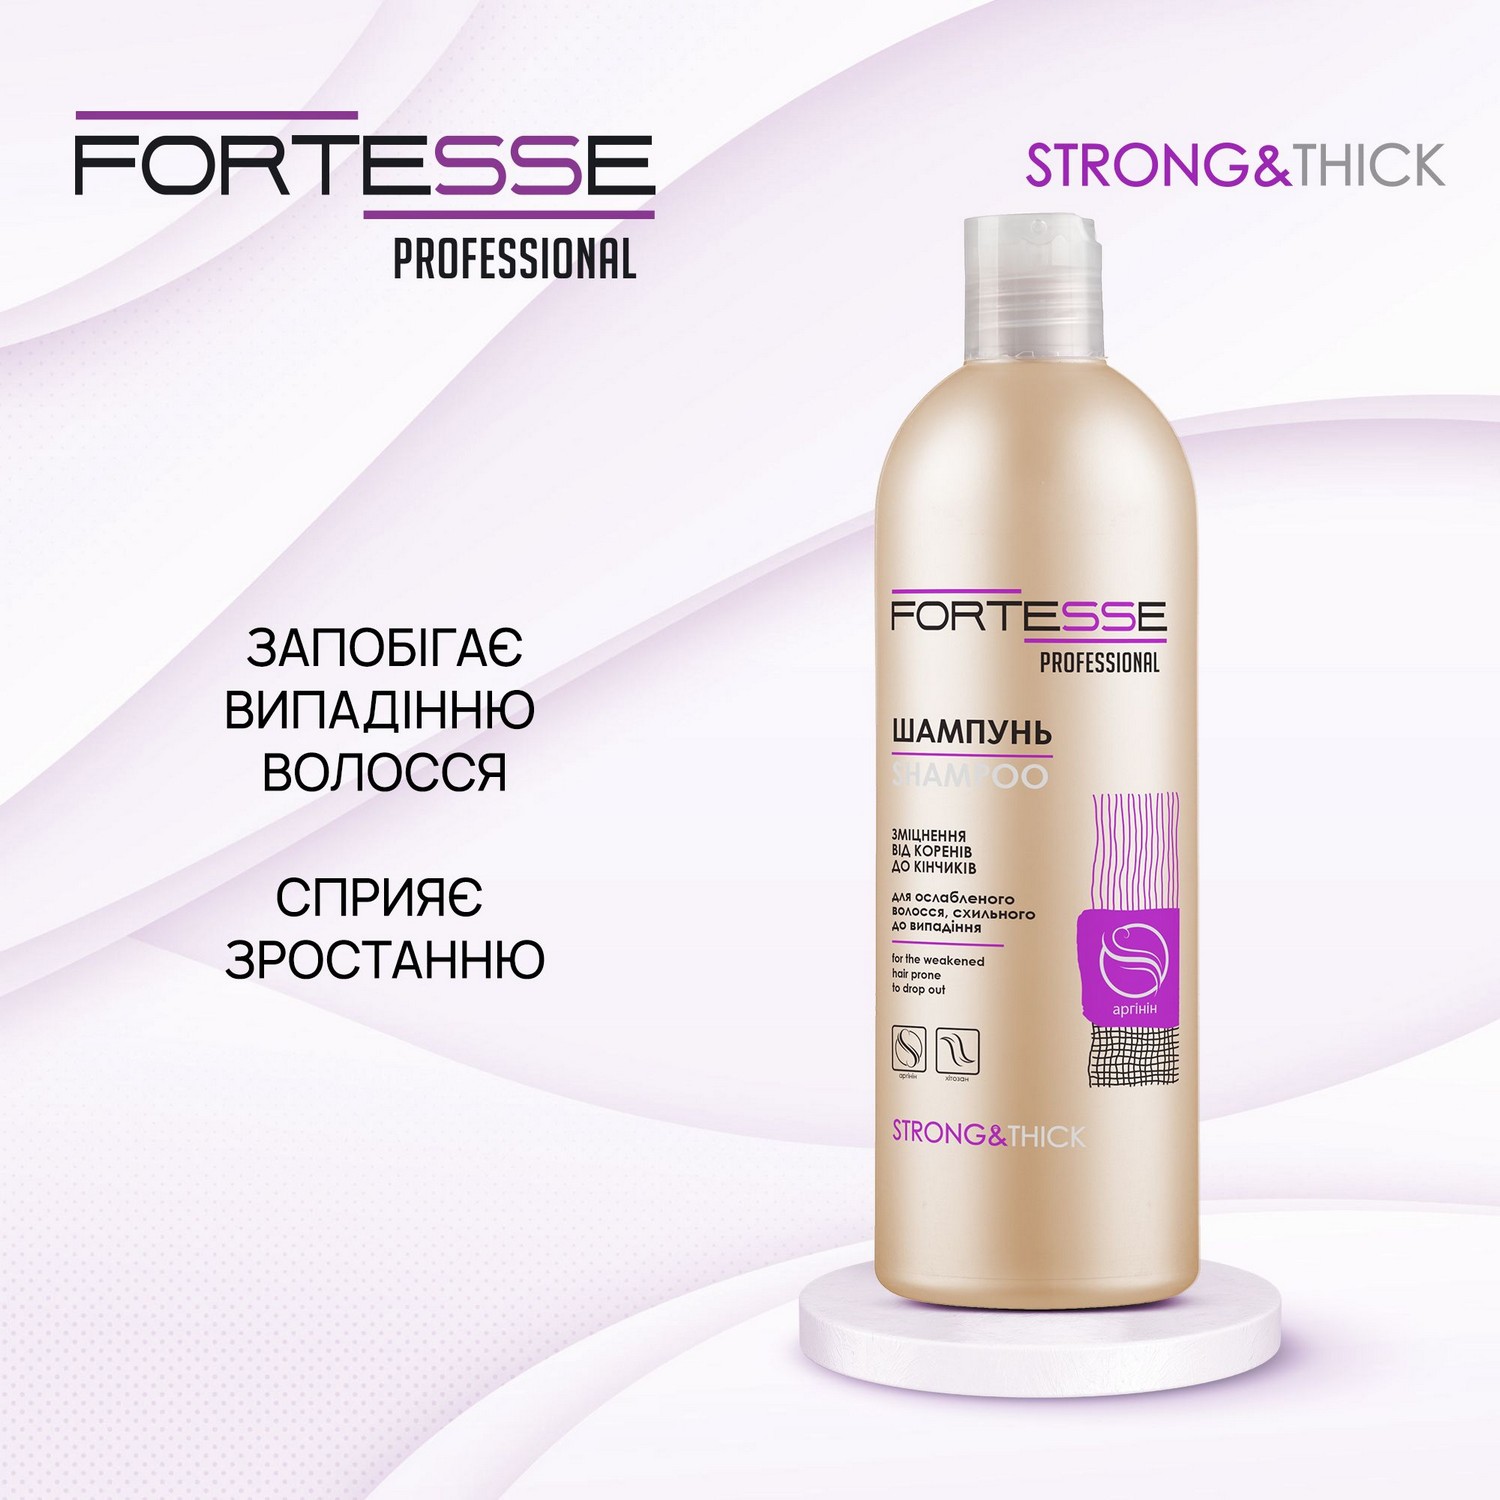 Укрепляющий шампунь Fortesse Professional Strong&Thick для ослабленных волос, склонных к выпадению, 400 мл - фото 4